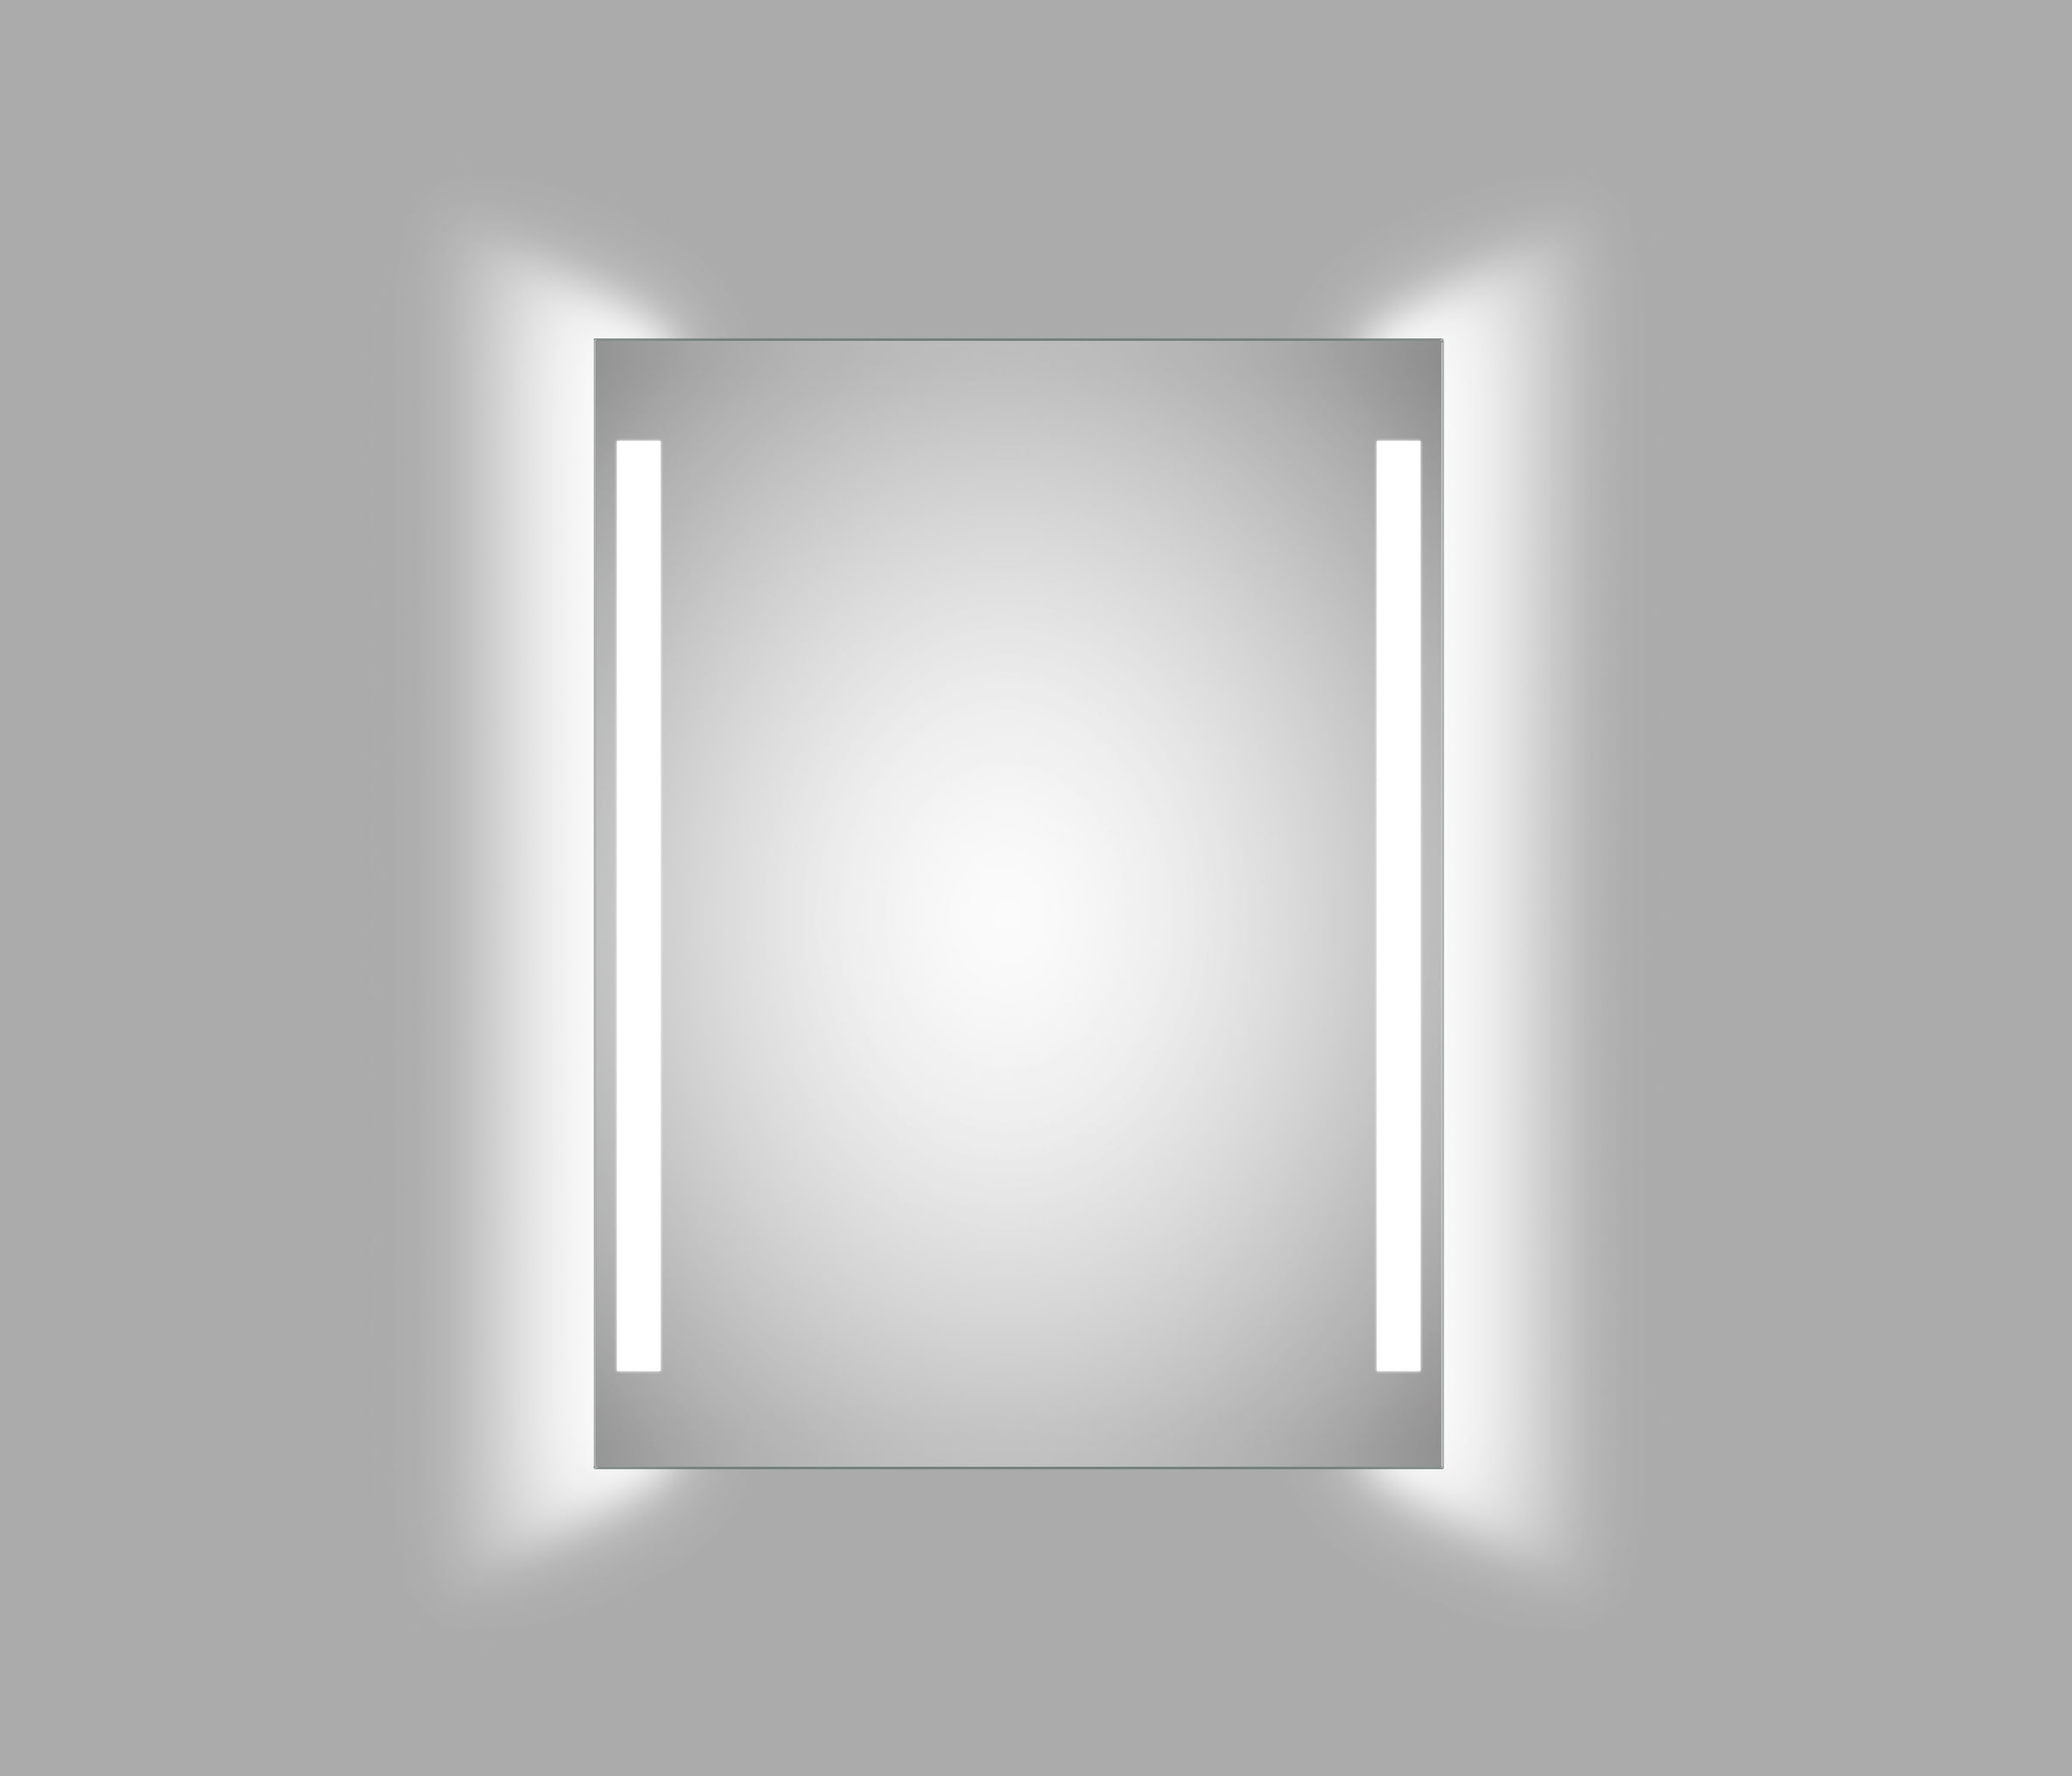 Badspiegel, (1 St.), 80x60 cm - Spiegel mit Beleuchtung